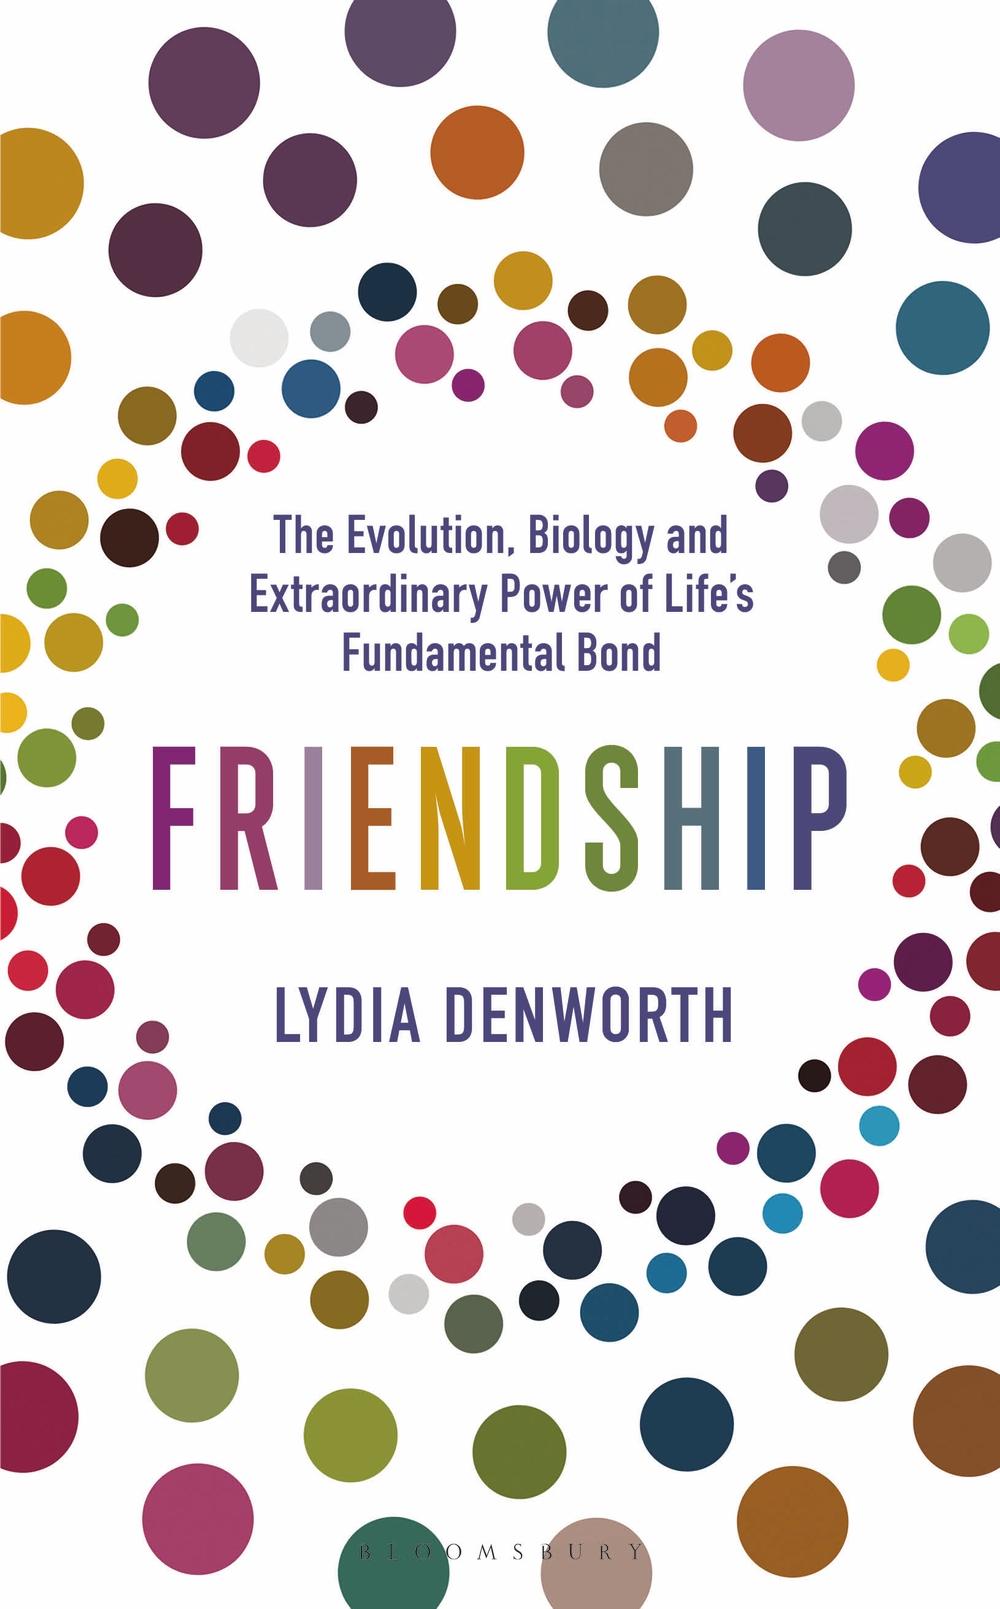 Friendship - Lydia Denworth